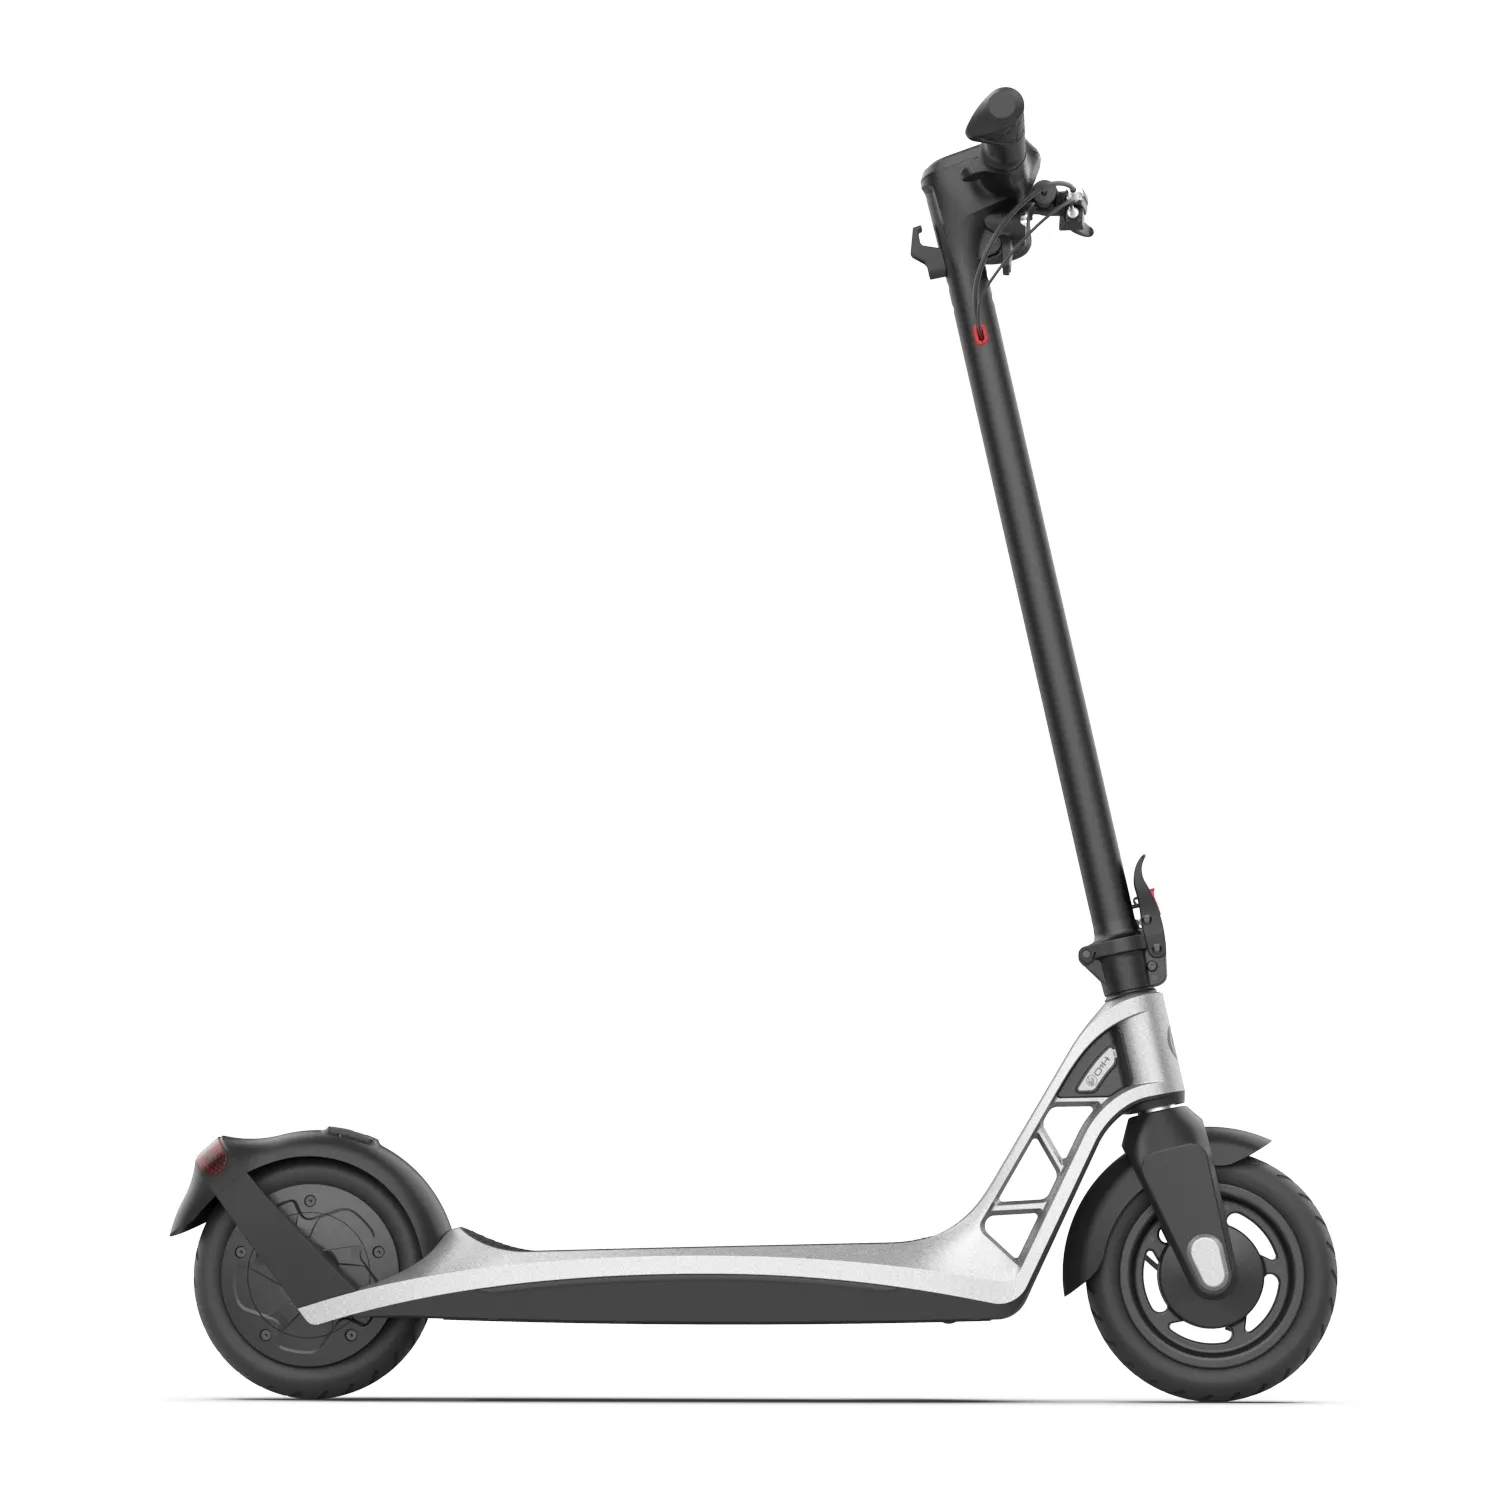 Электрический скутер электрический со светодиодной подсветкой для ЕС и США, колеса 9 дюймов с максимальной скоростью 25 км/ч 36 В, складной, для взрослых